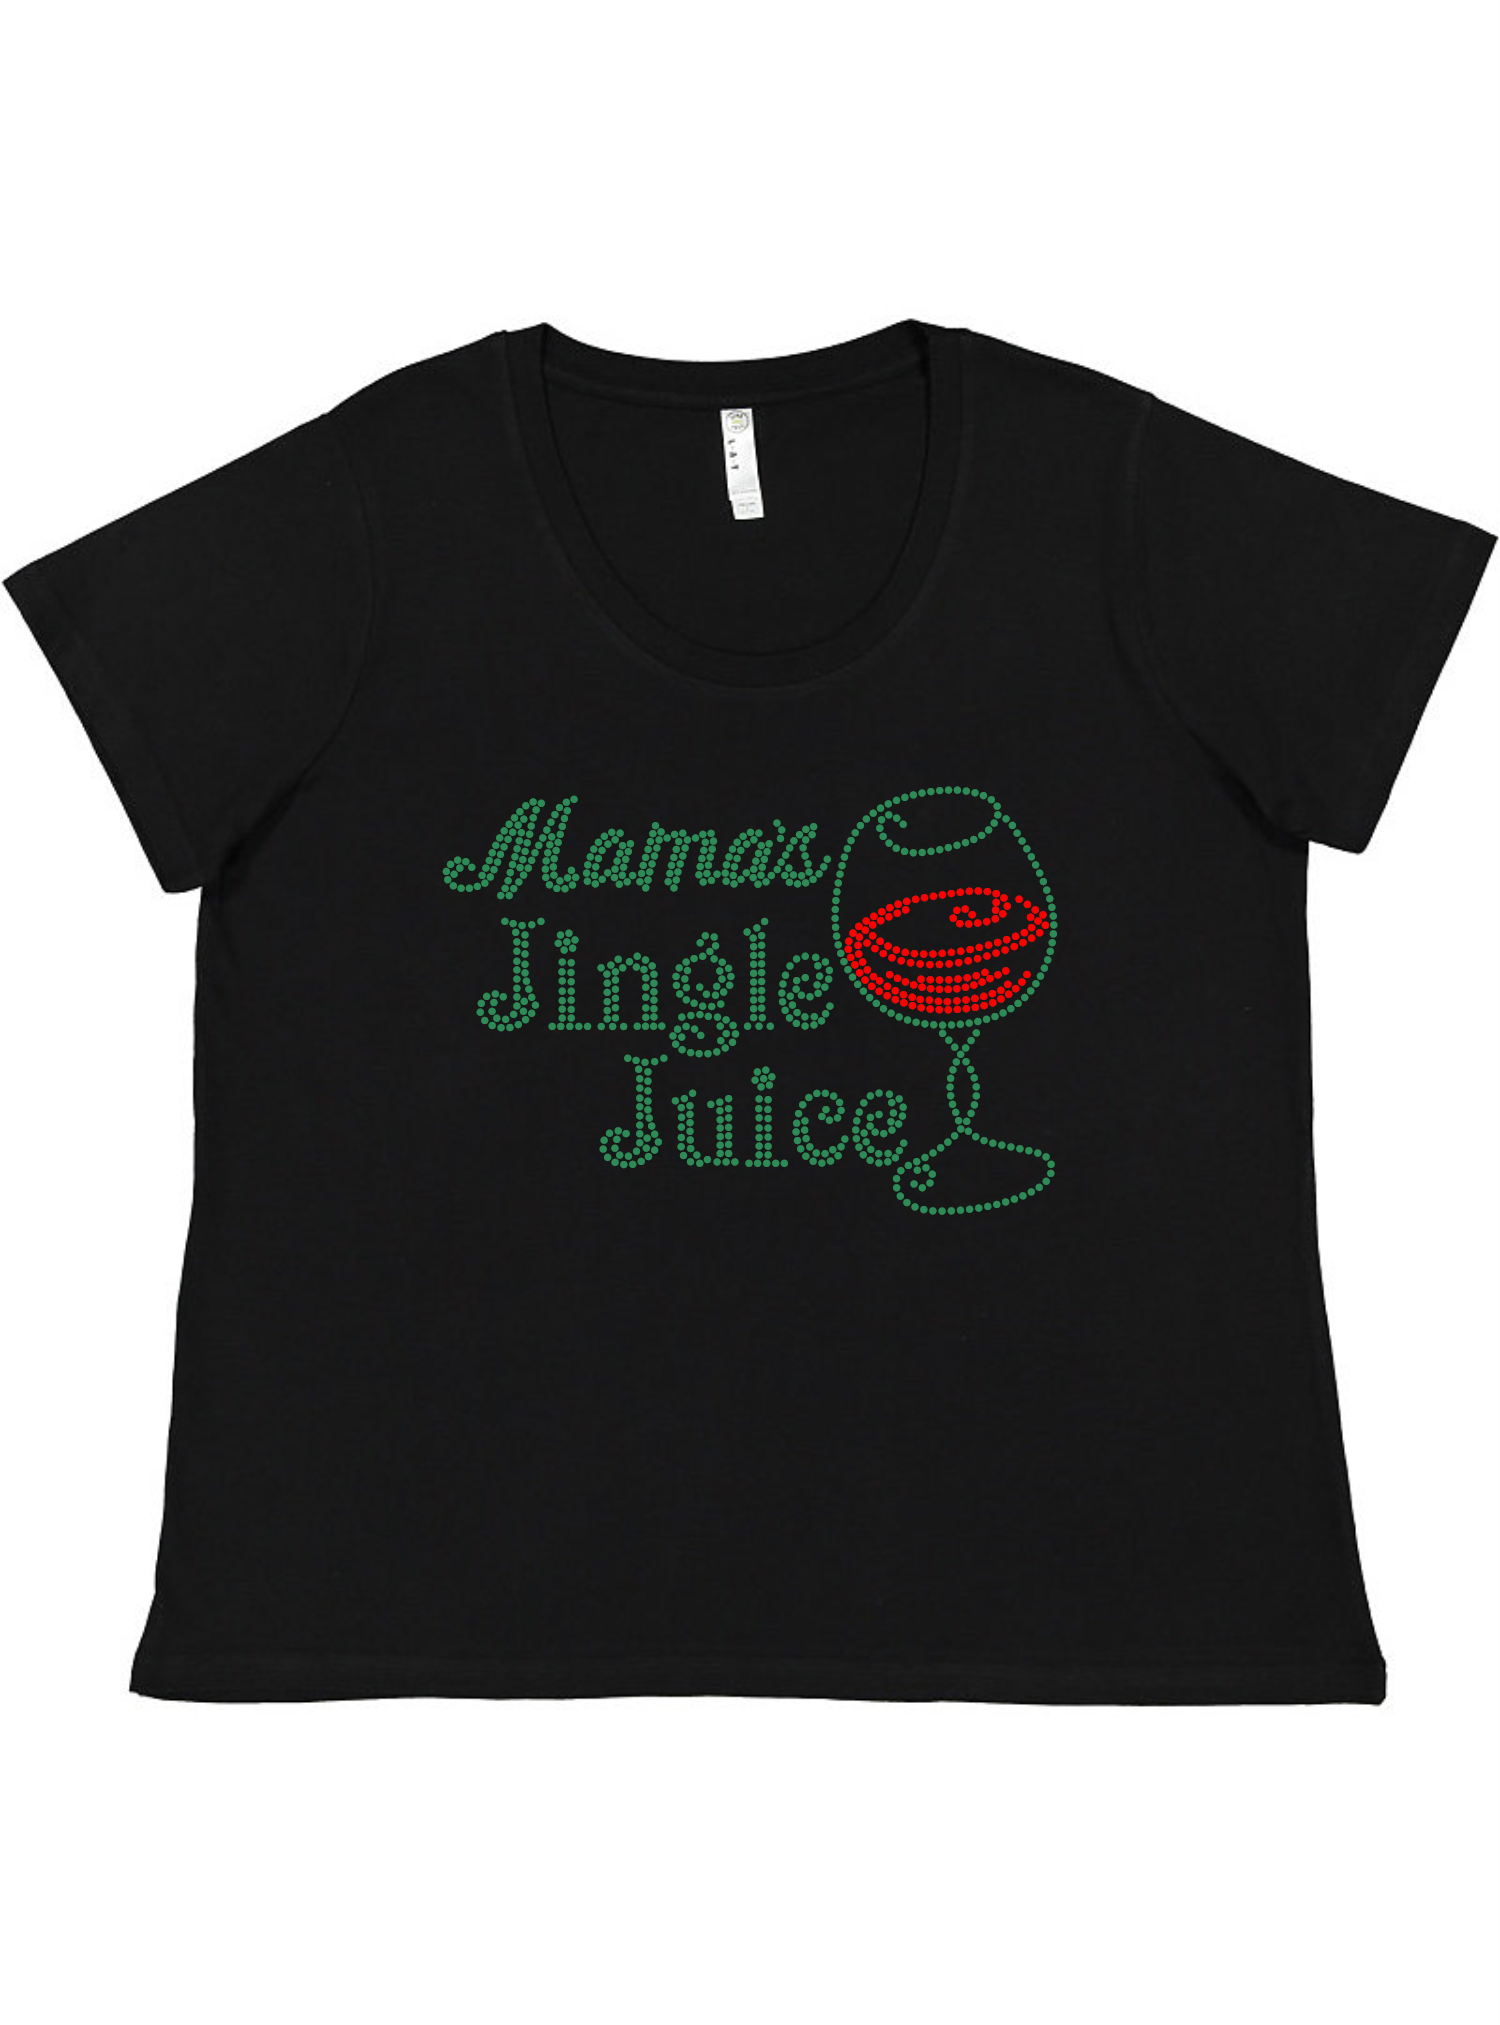 Jingle Juice Ladies Tee Ladies Shirt by Akron Pride Custom Tees | Akron Pride Custom Tees